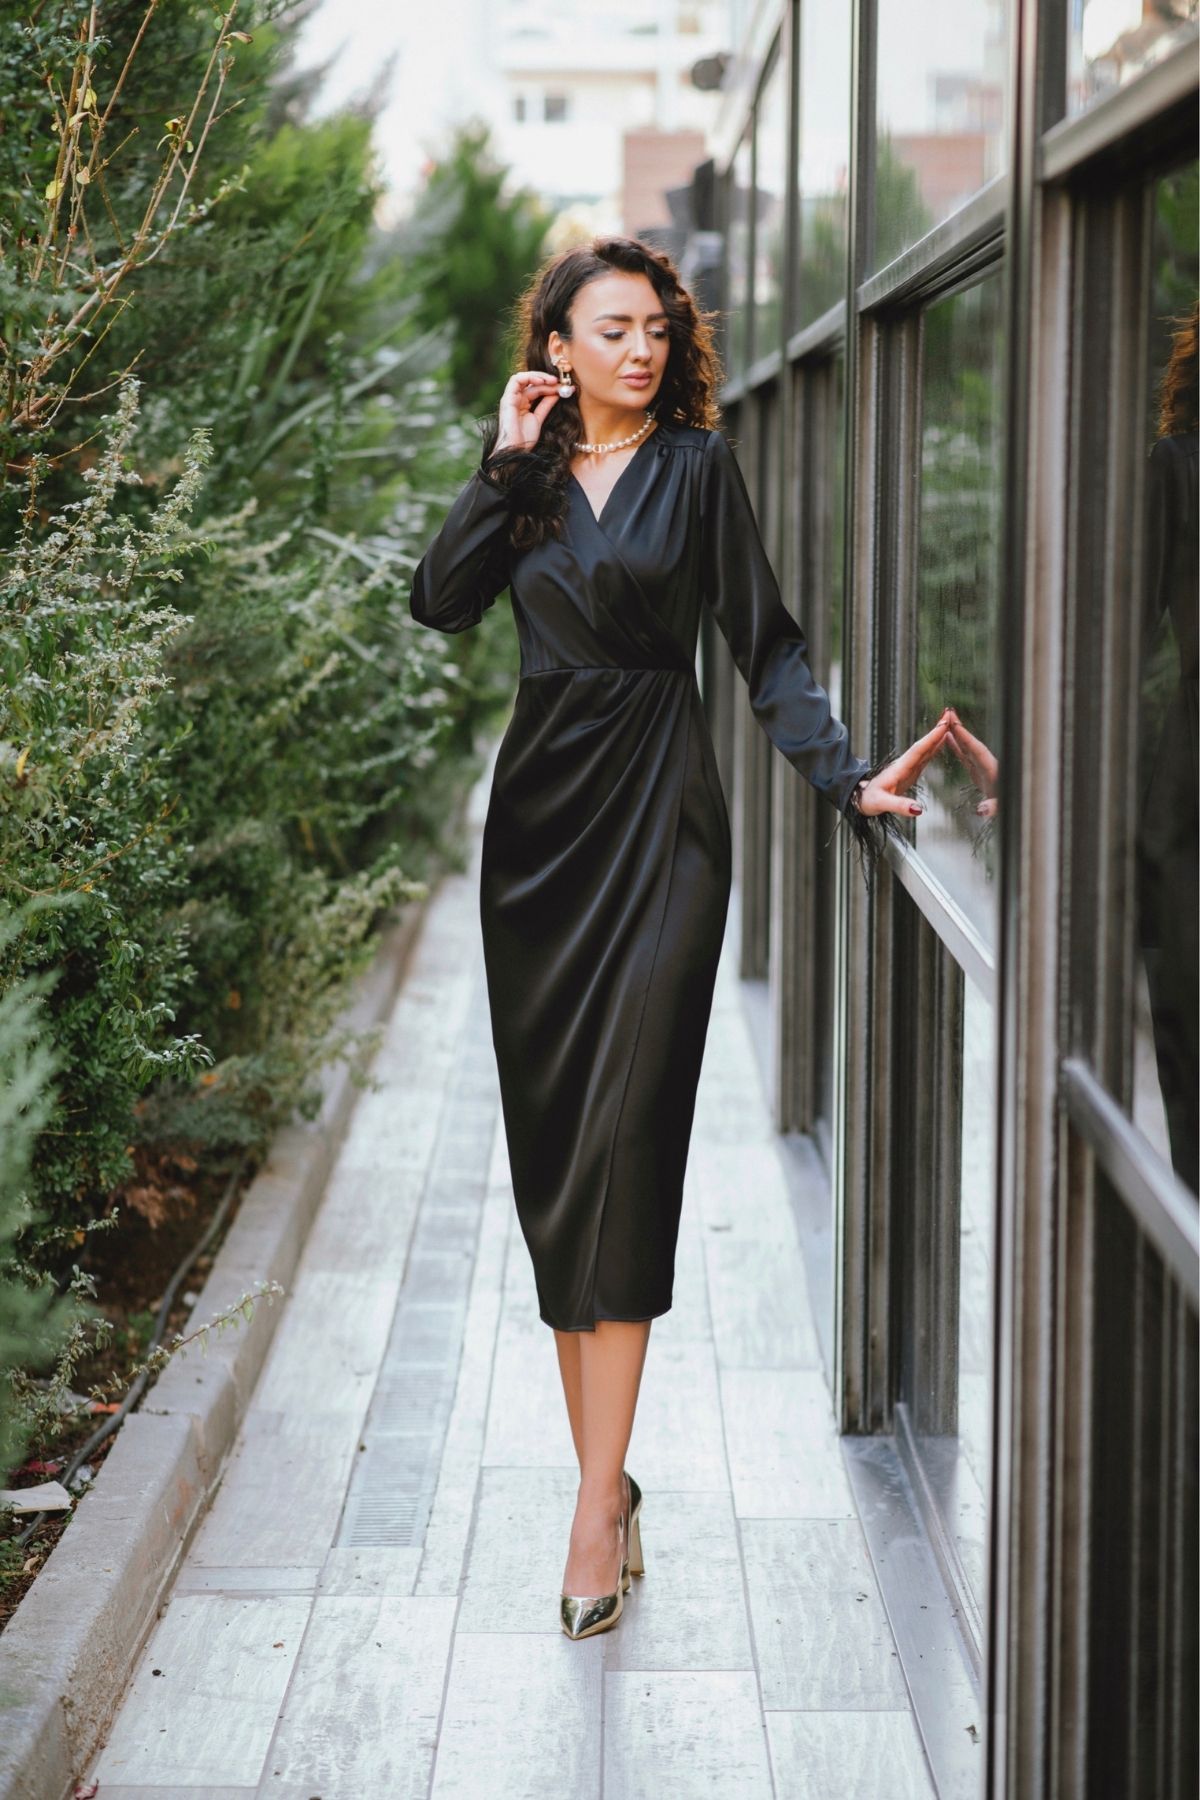 Tasarım Siyah Saten Kolu Tüylü Elbise